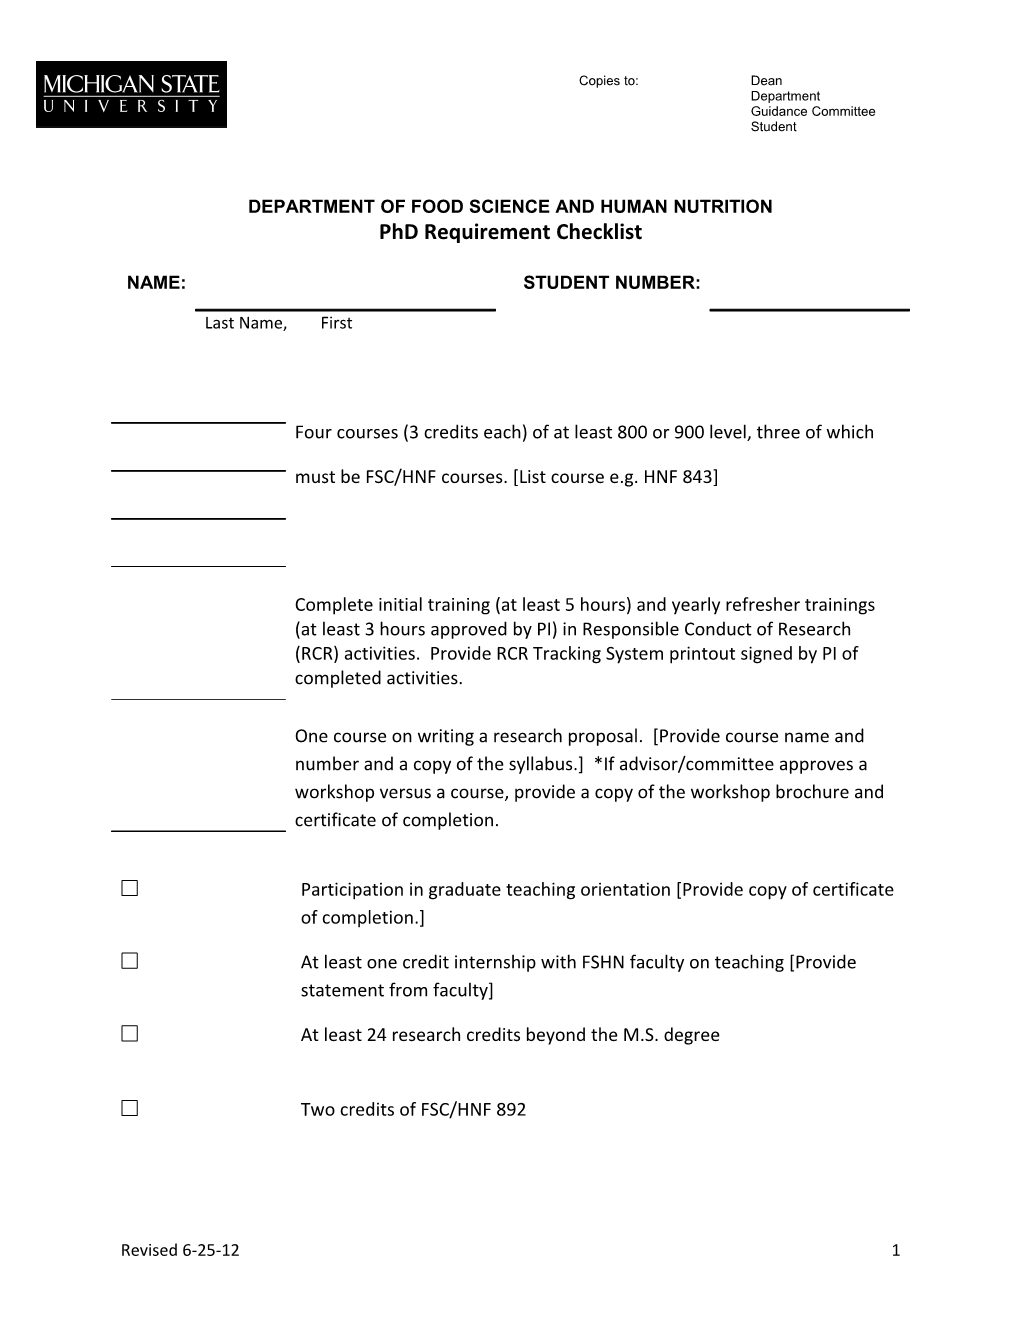 FSHN Phd Requirement Checklist